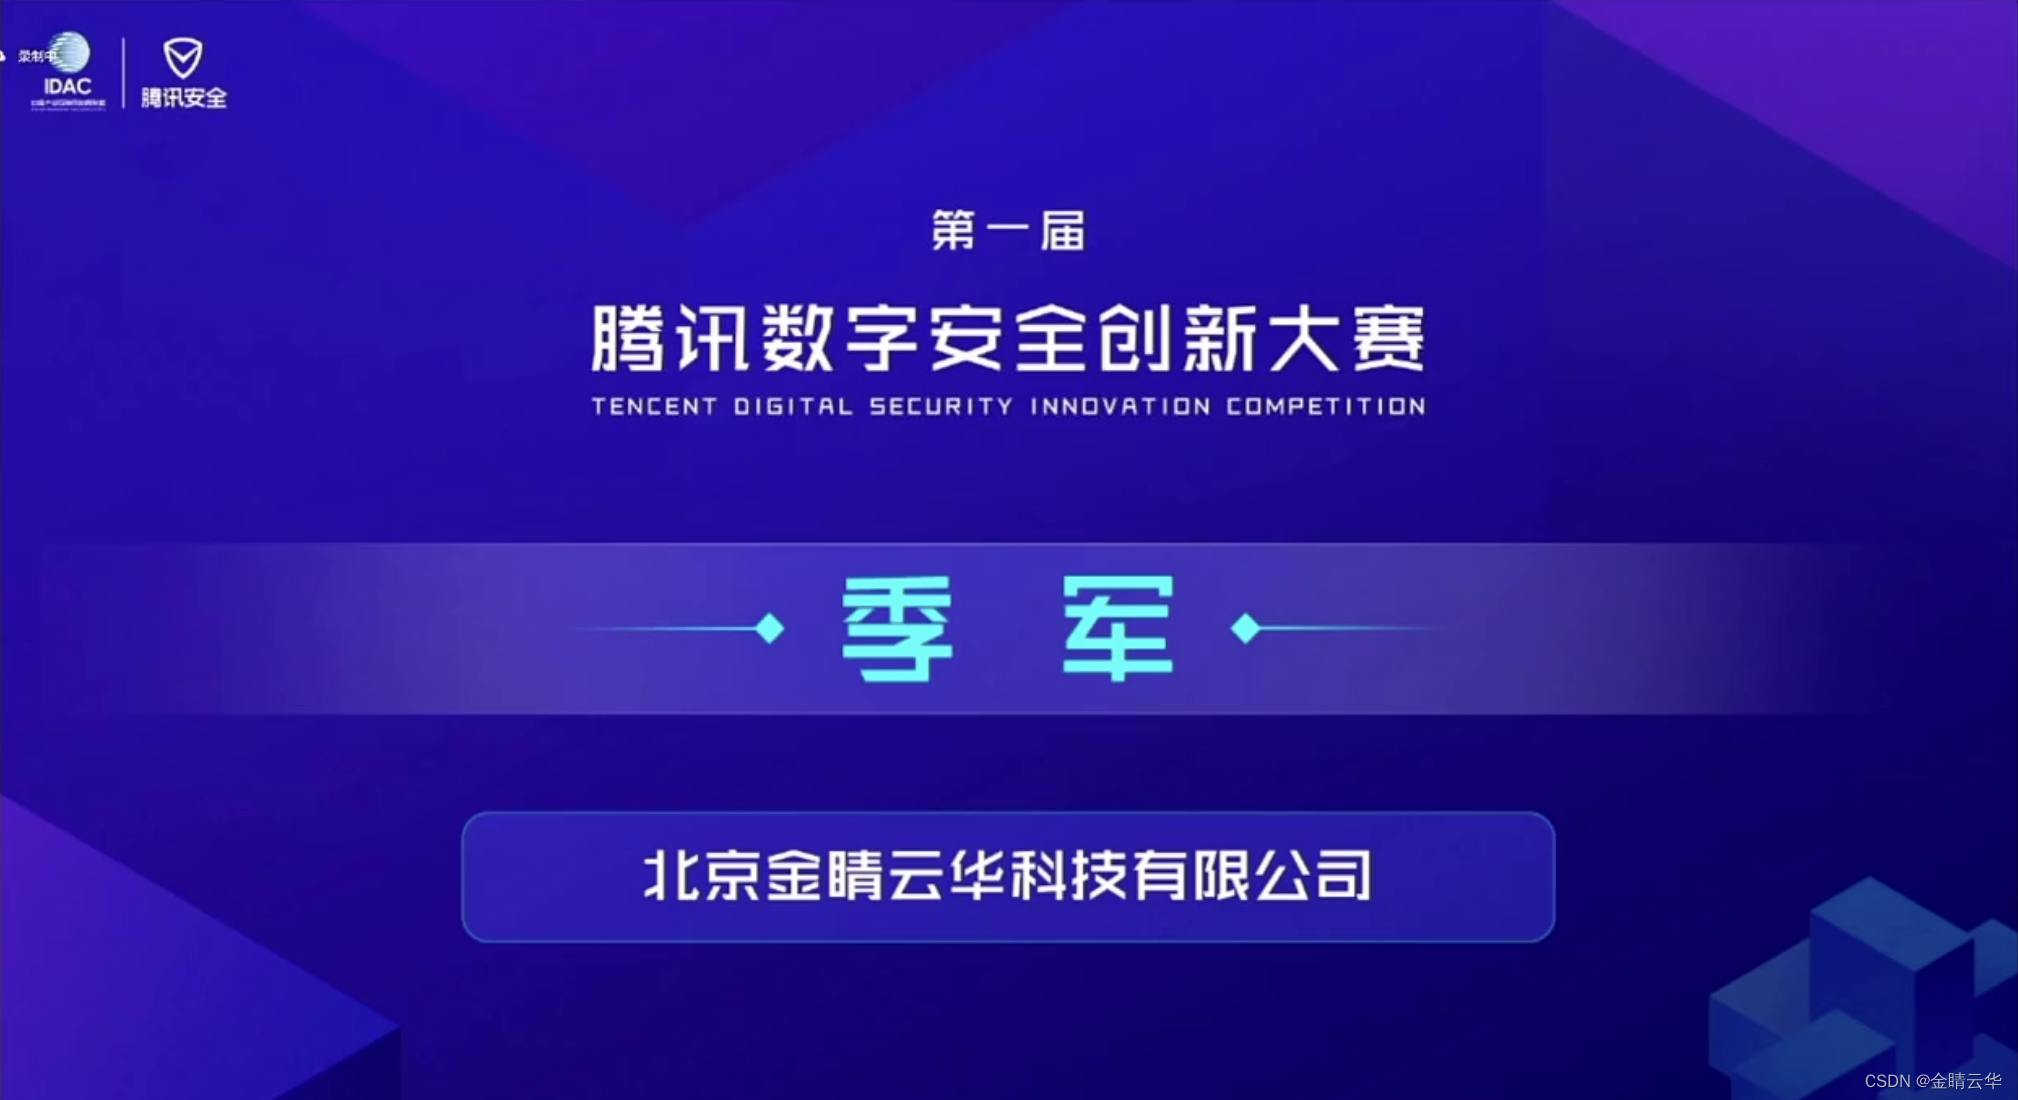 金睛云华荣获首届腾讯数字安全创新大赛季军